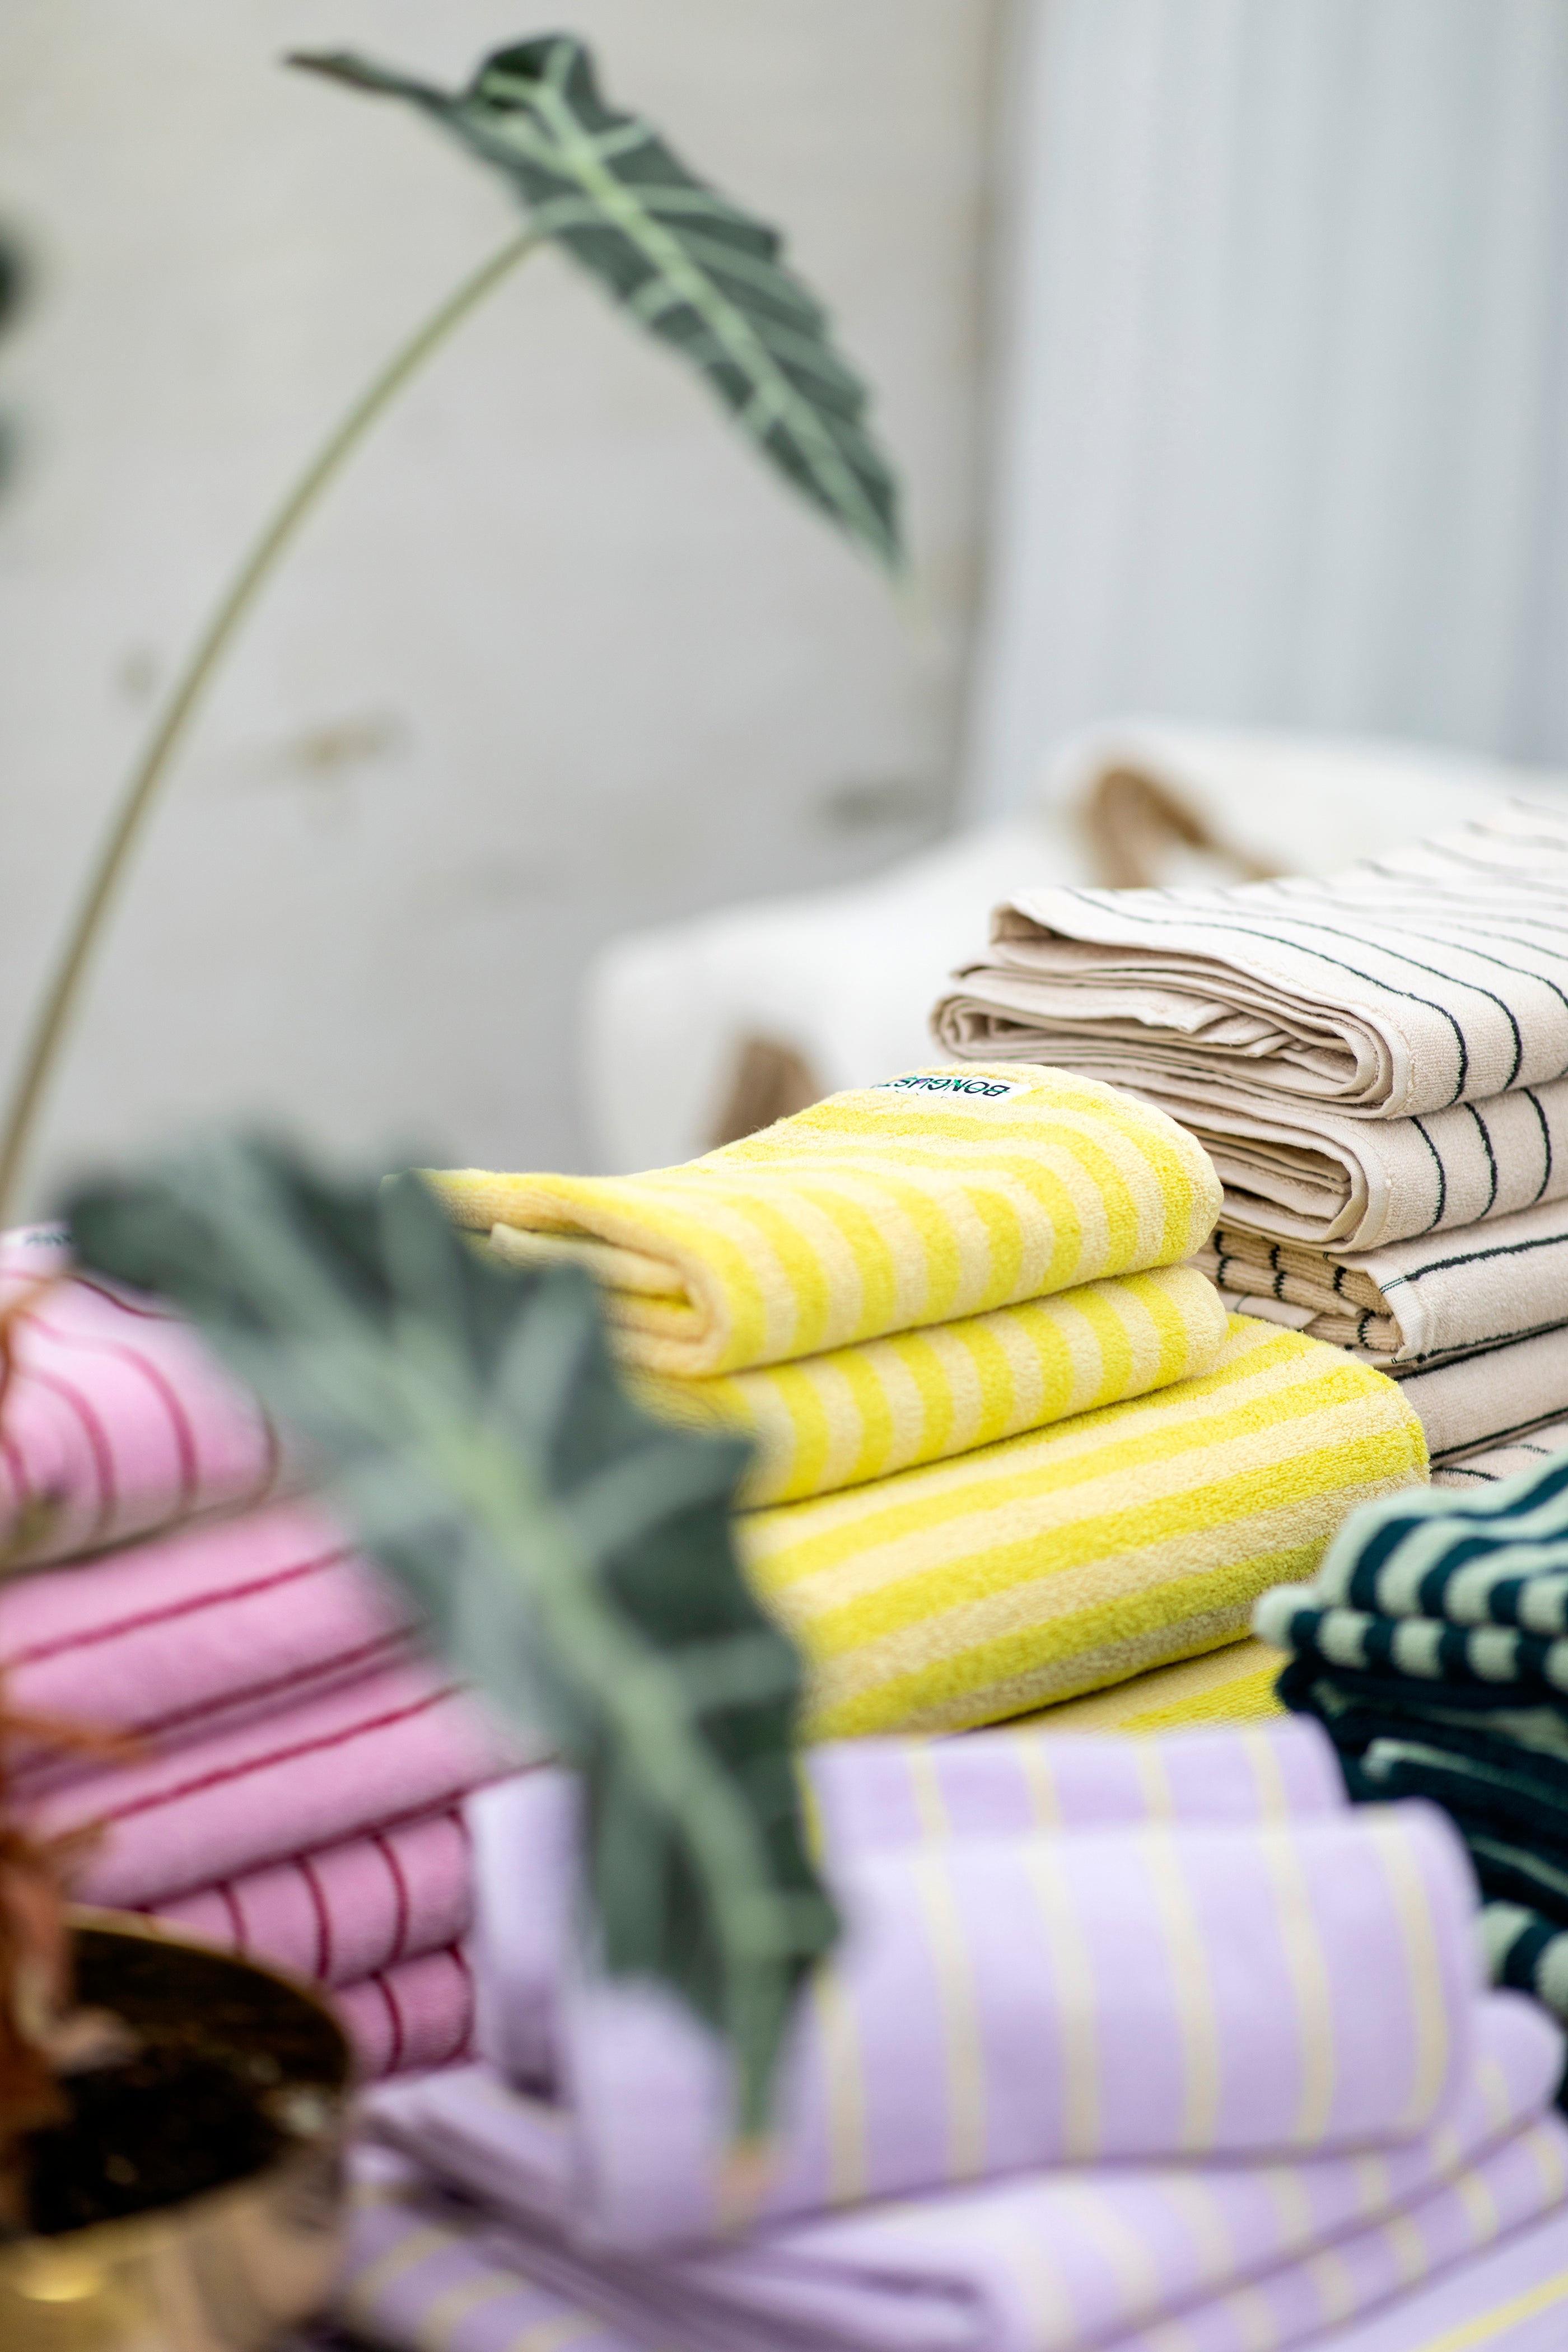 – Naram Bongusta & Towels, neon yellow pristine